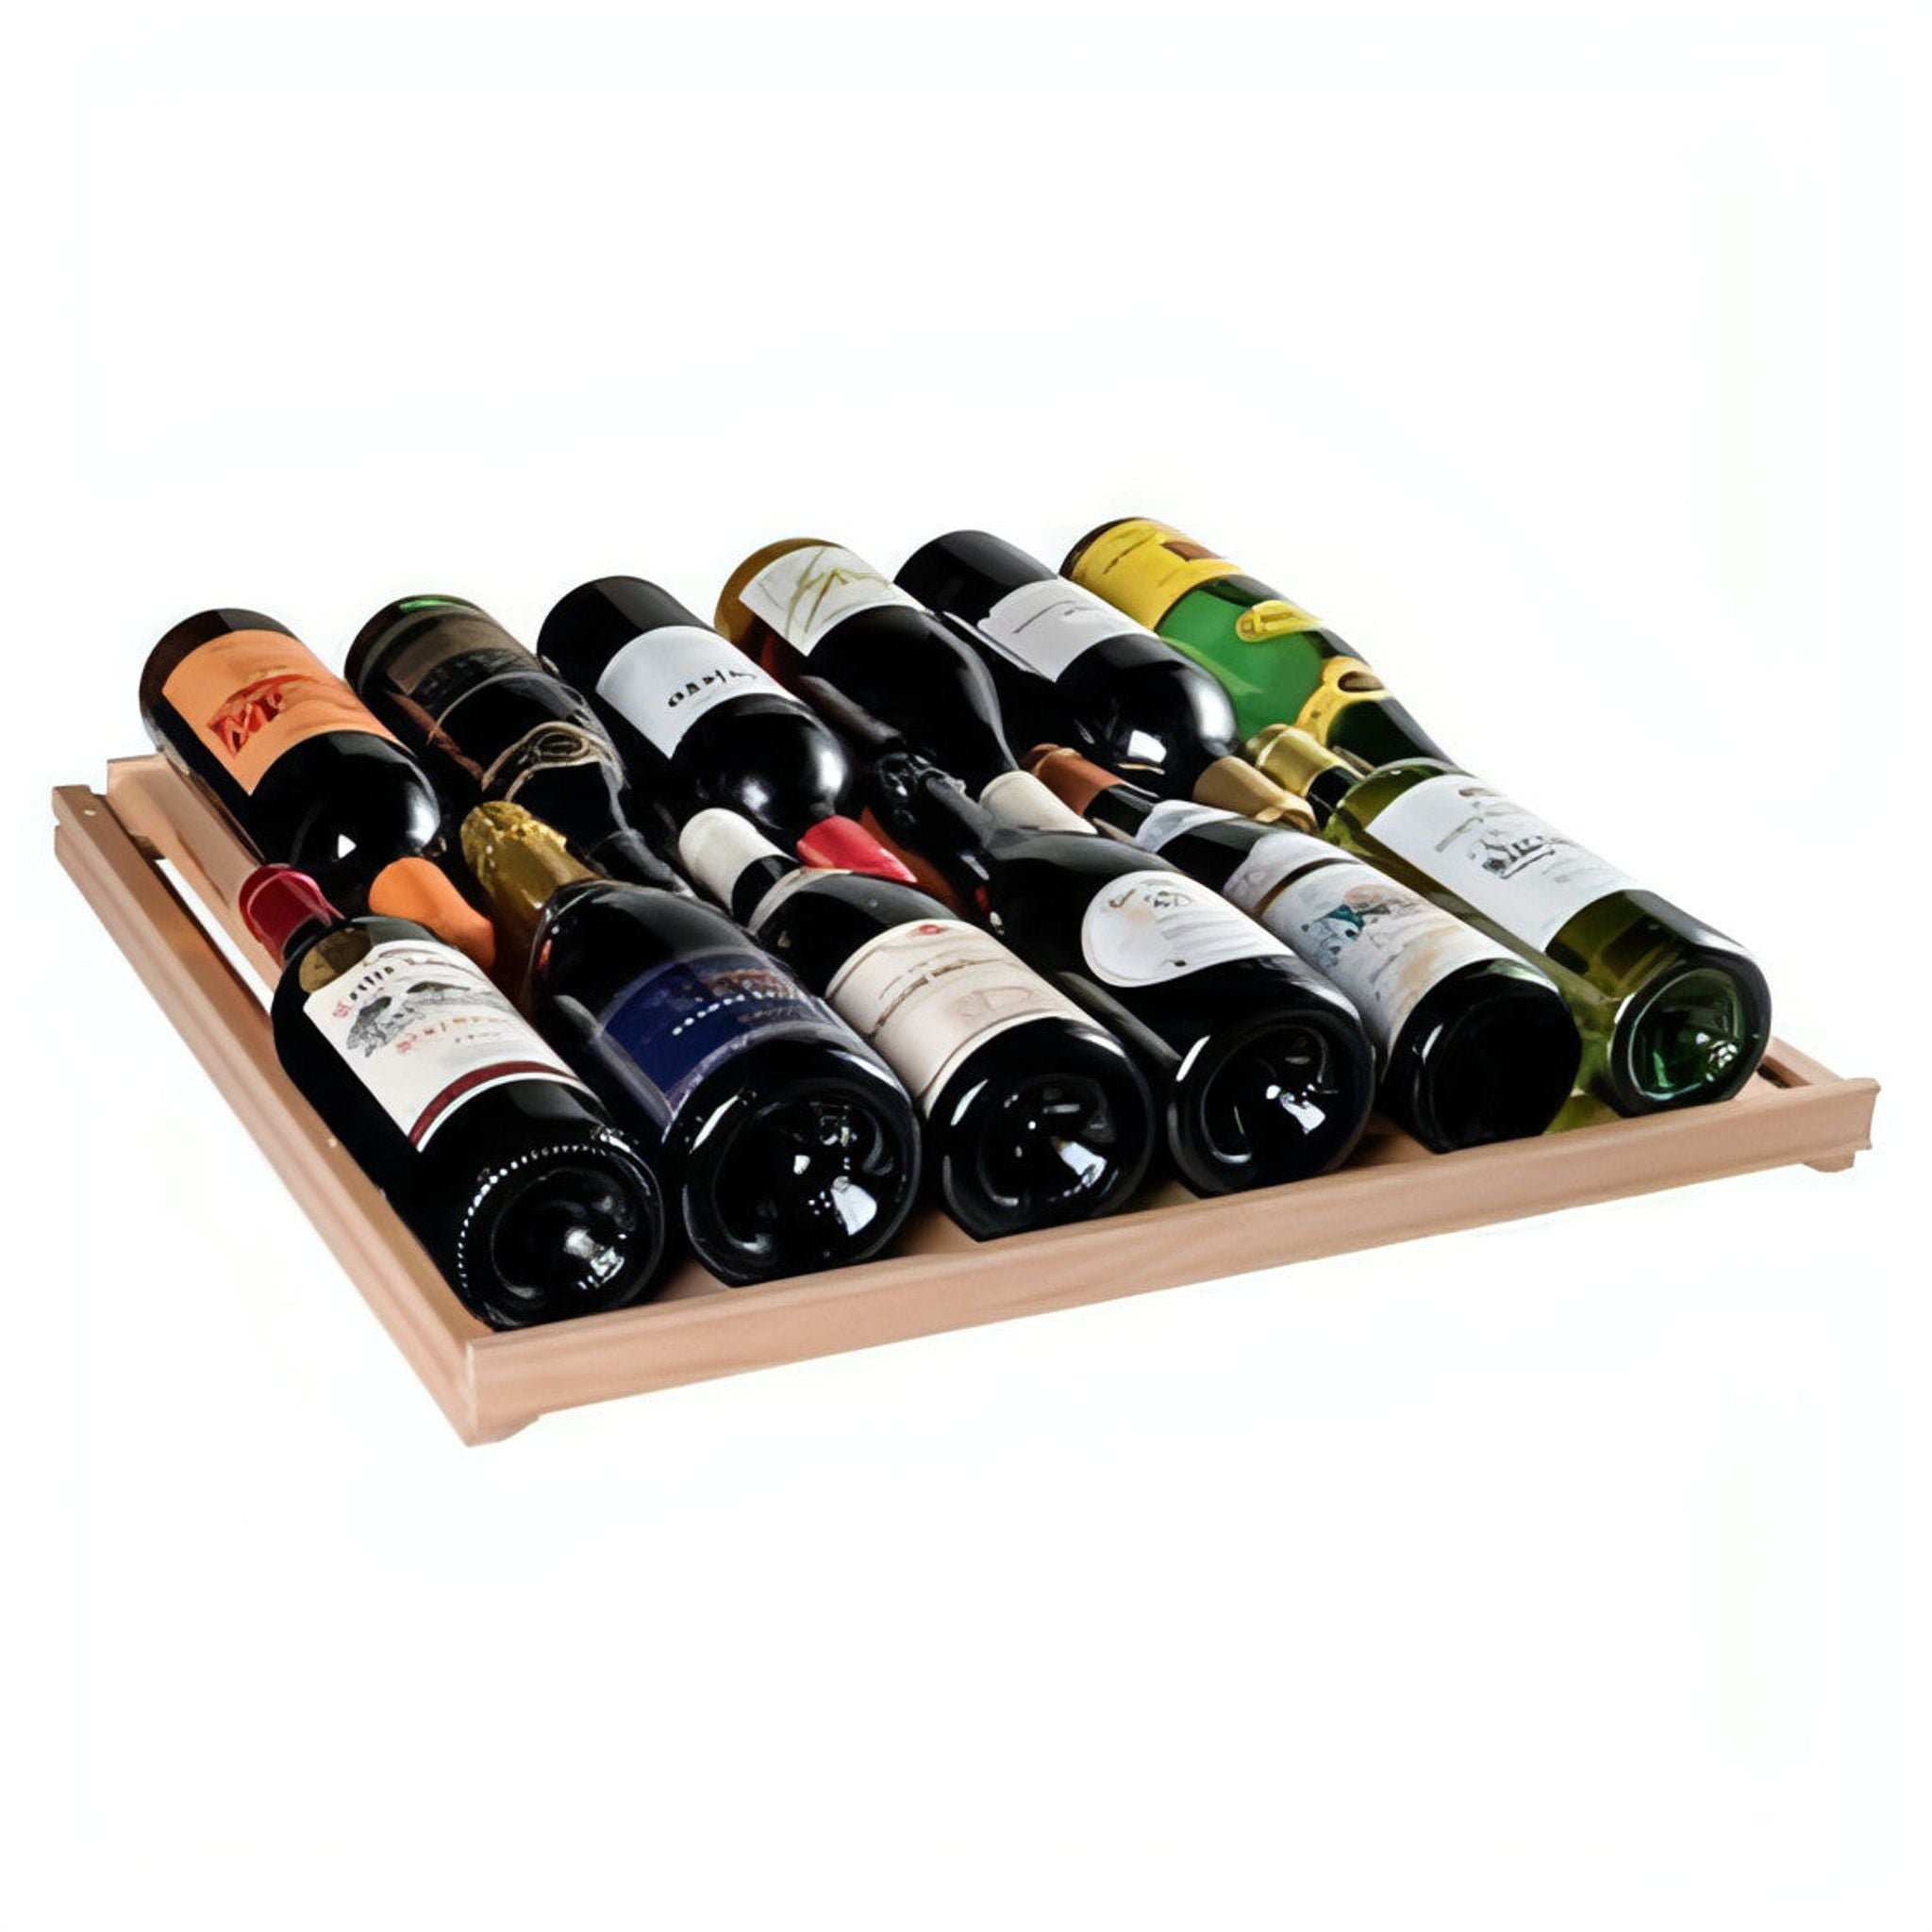 Artevino Oxygen - 182 Bottle - Maturing Wine Cabinet OXM1T182NPD - Solid Door